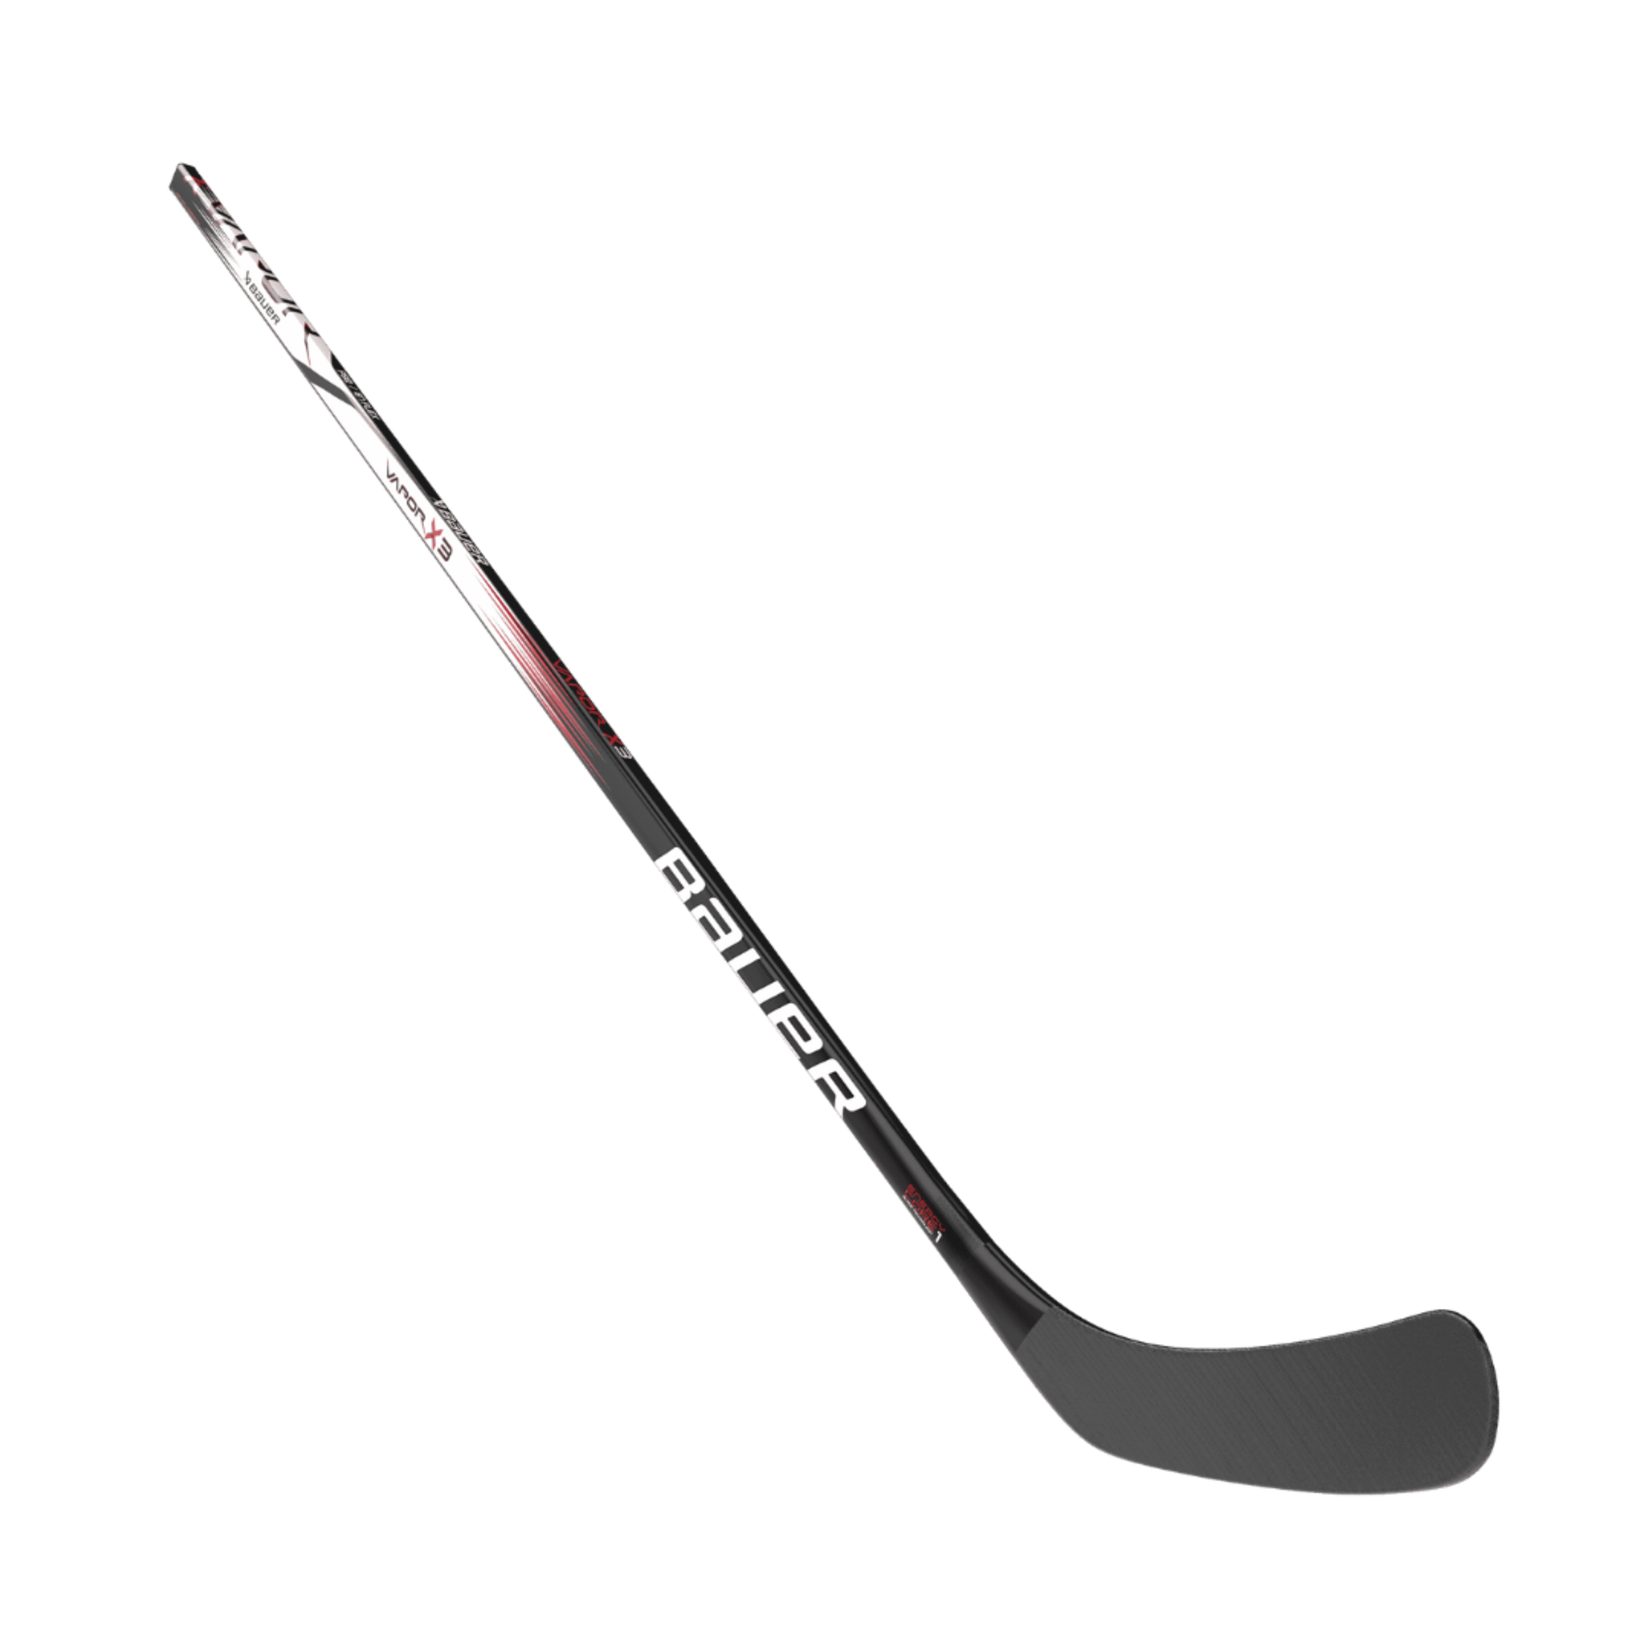 Bauer Bauer Hockey Stick, Vapor X3, Grip, Junior 54"